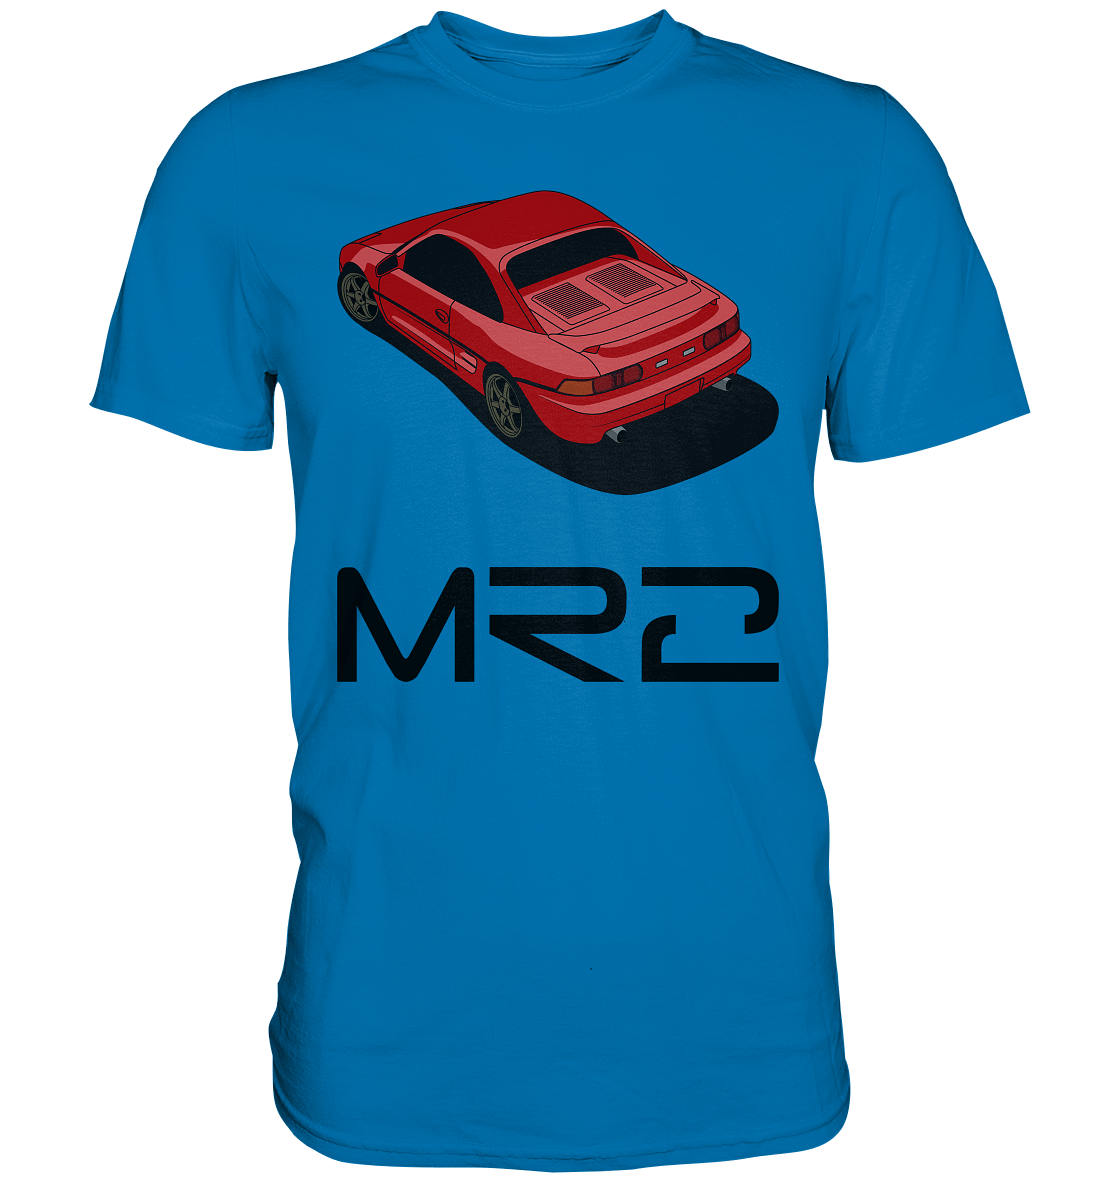 red MR2 - Premium Shirt - MotoMerch.de